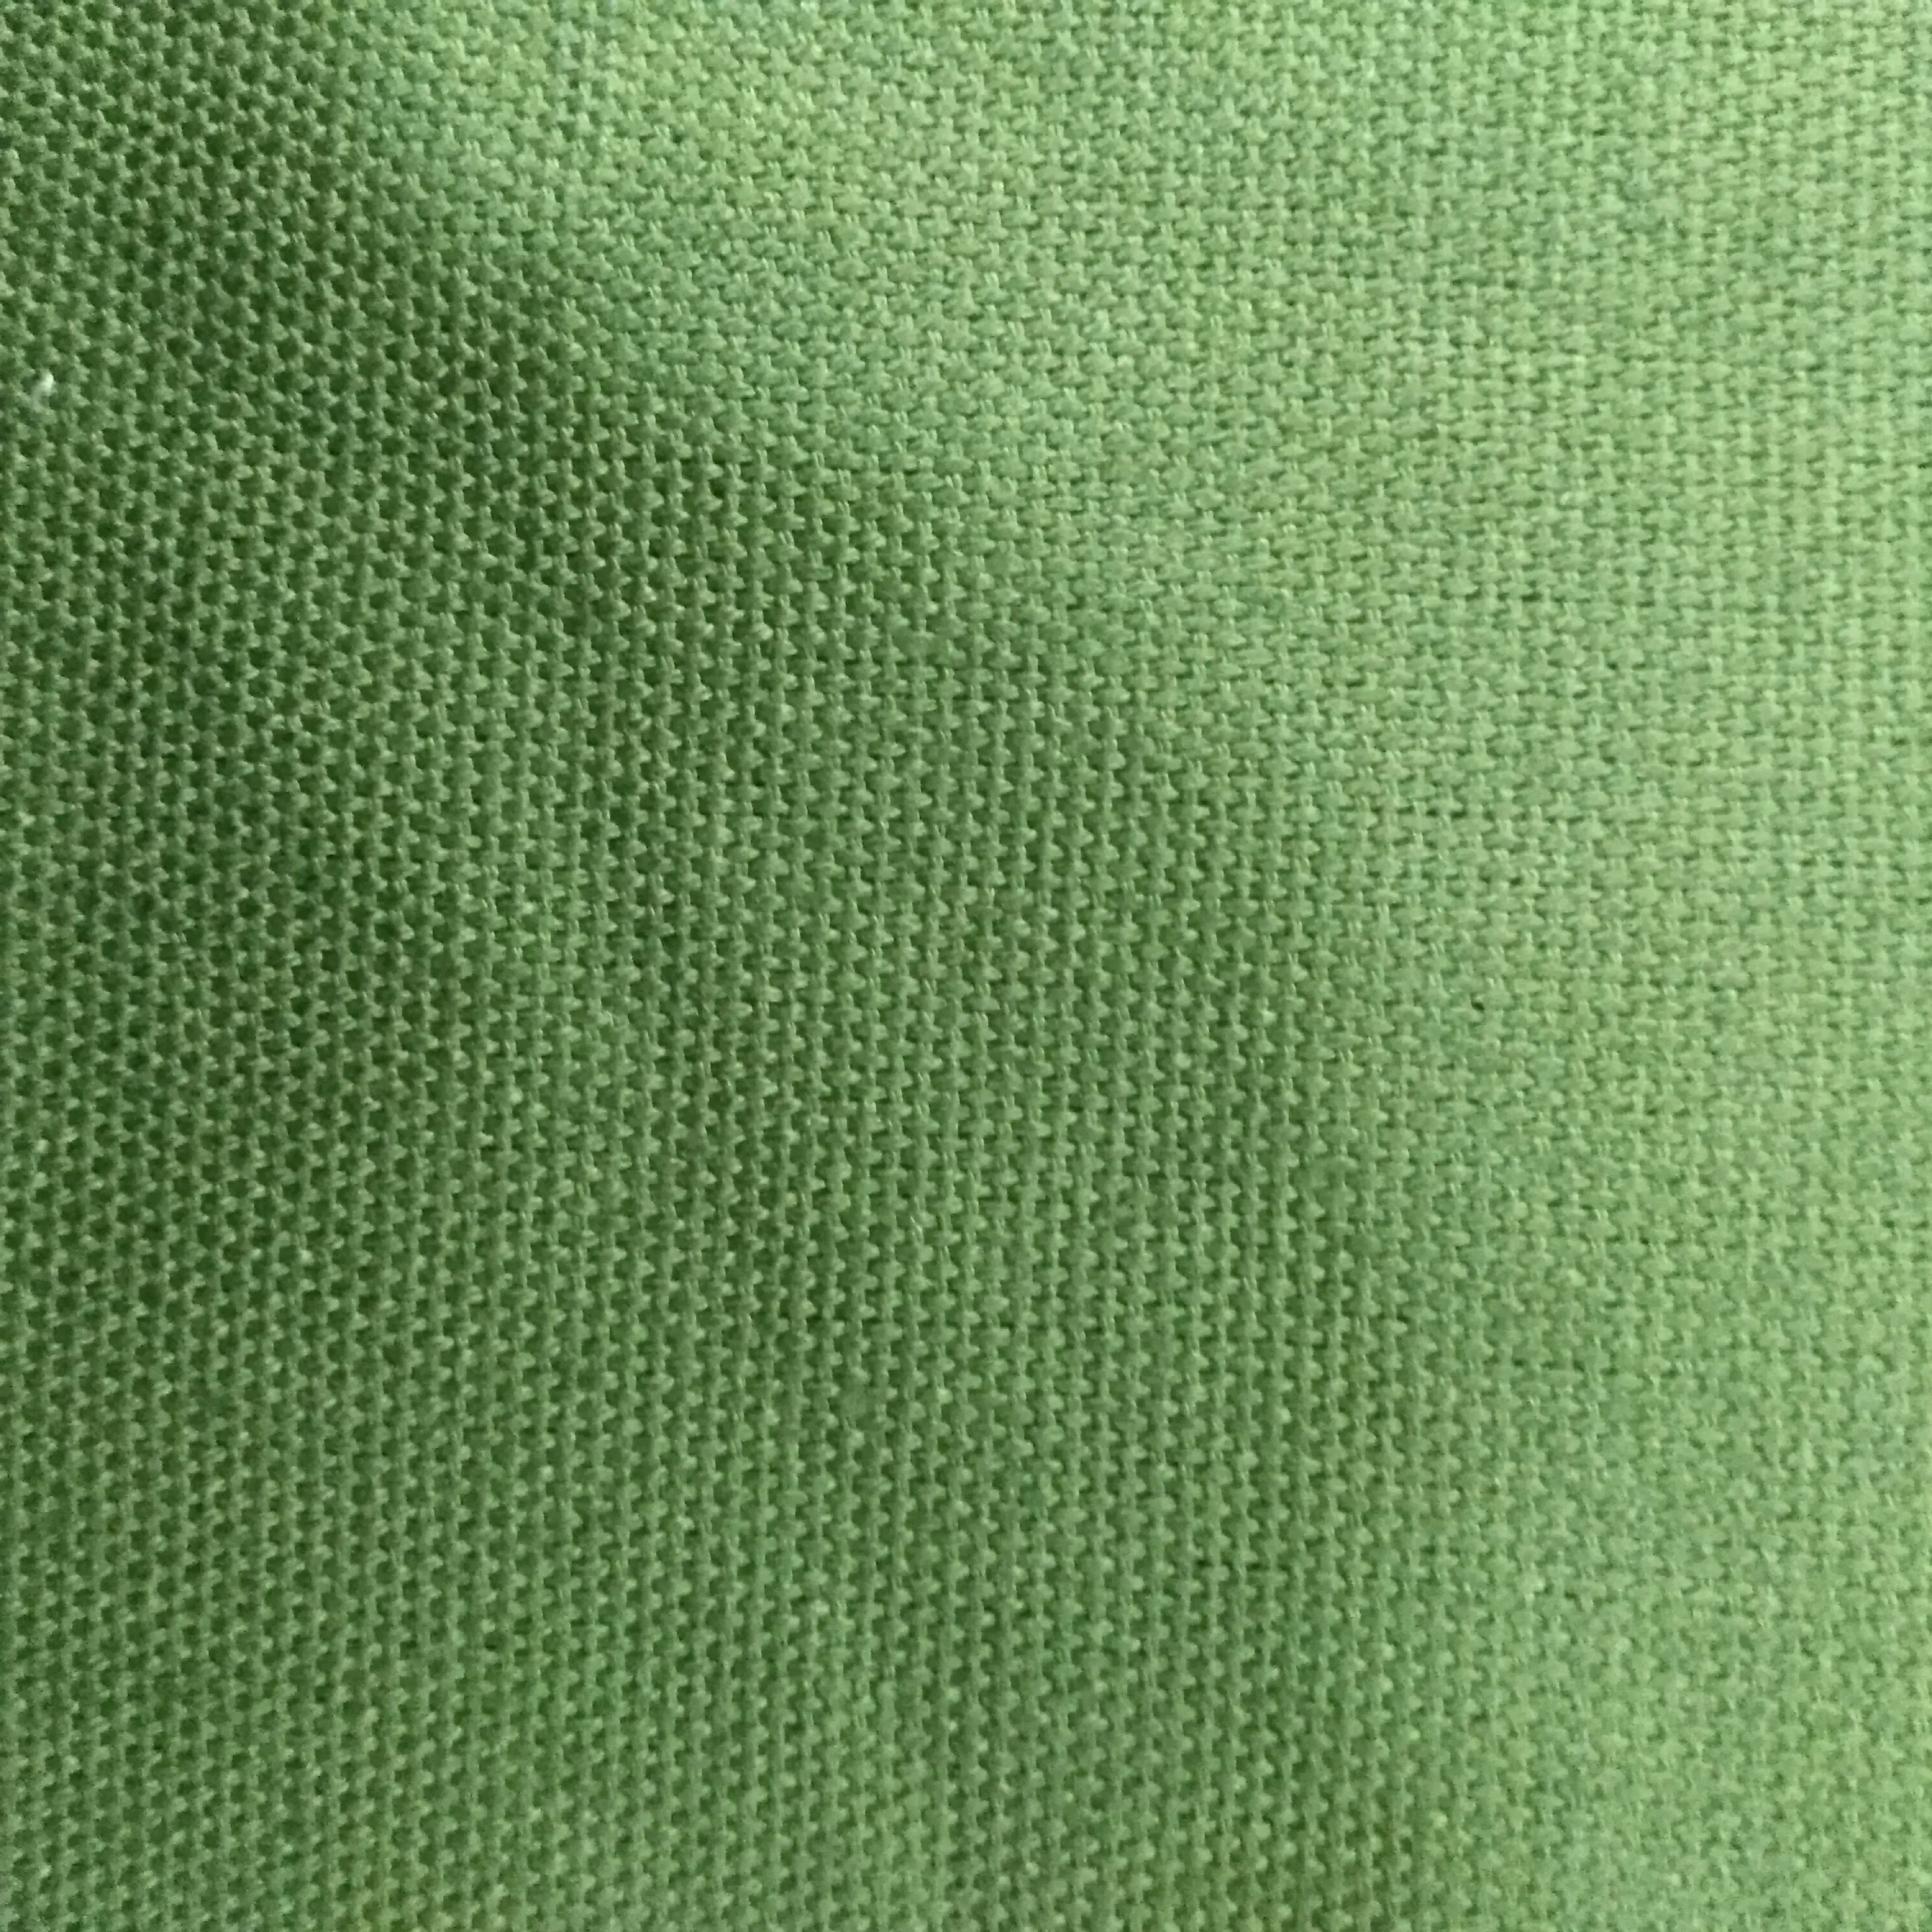 CYCHOS 2019 Шанхай оптовая продажа GOTS пеньковая ткань экологически чистая 100% Органическая пеньковая хлопковая ткань